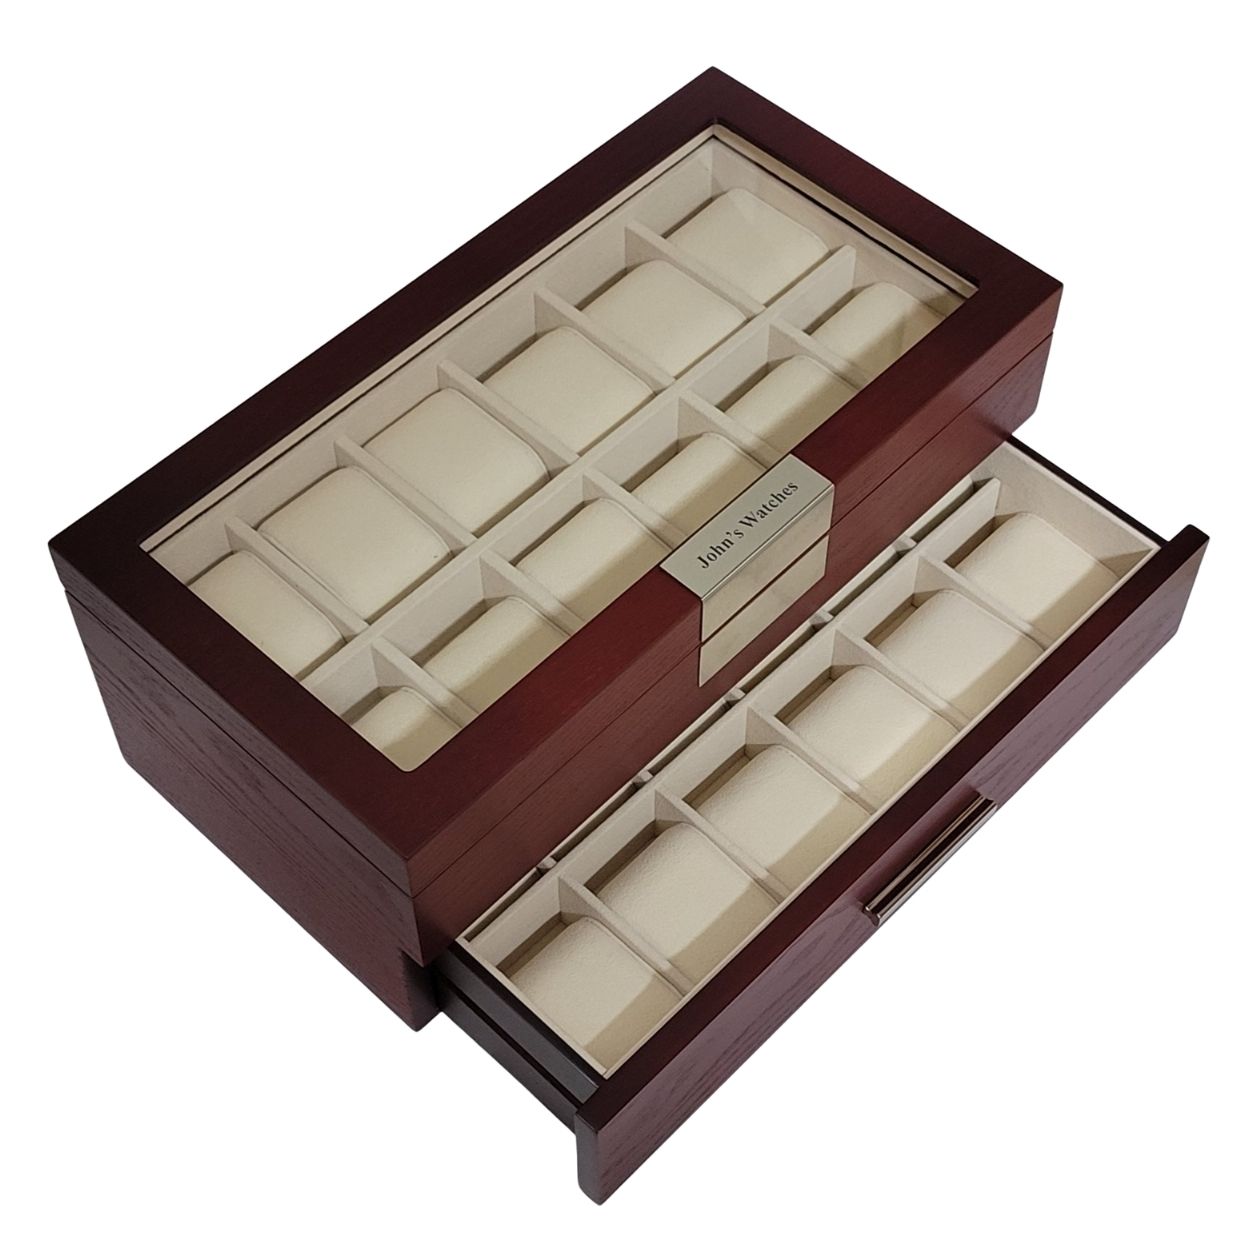 Tie Display Case for 12 Ties Ebony Walnut Two Level Storage Box